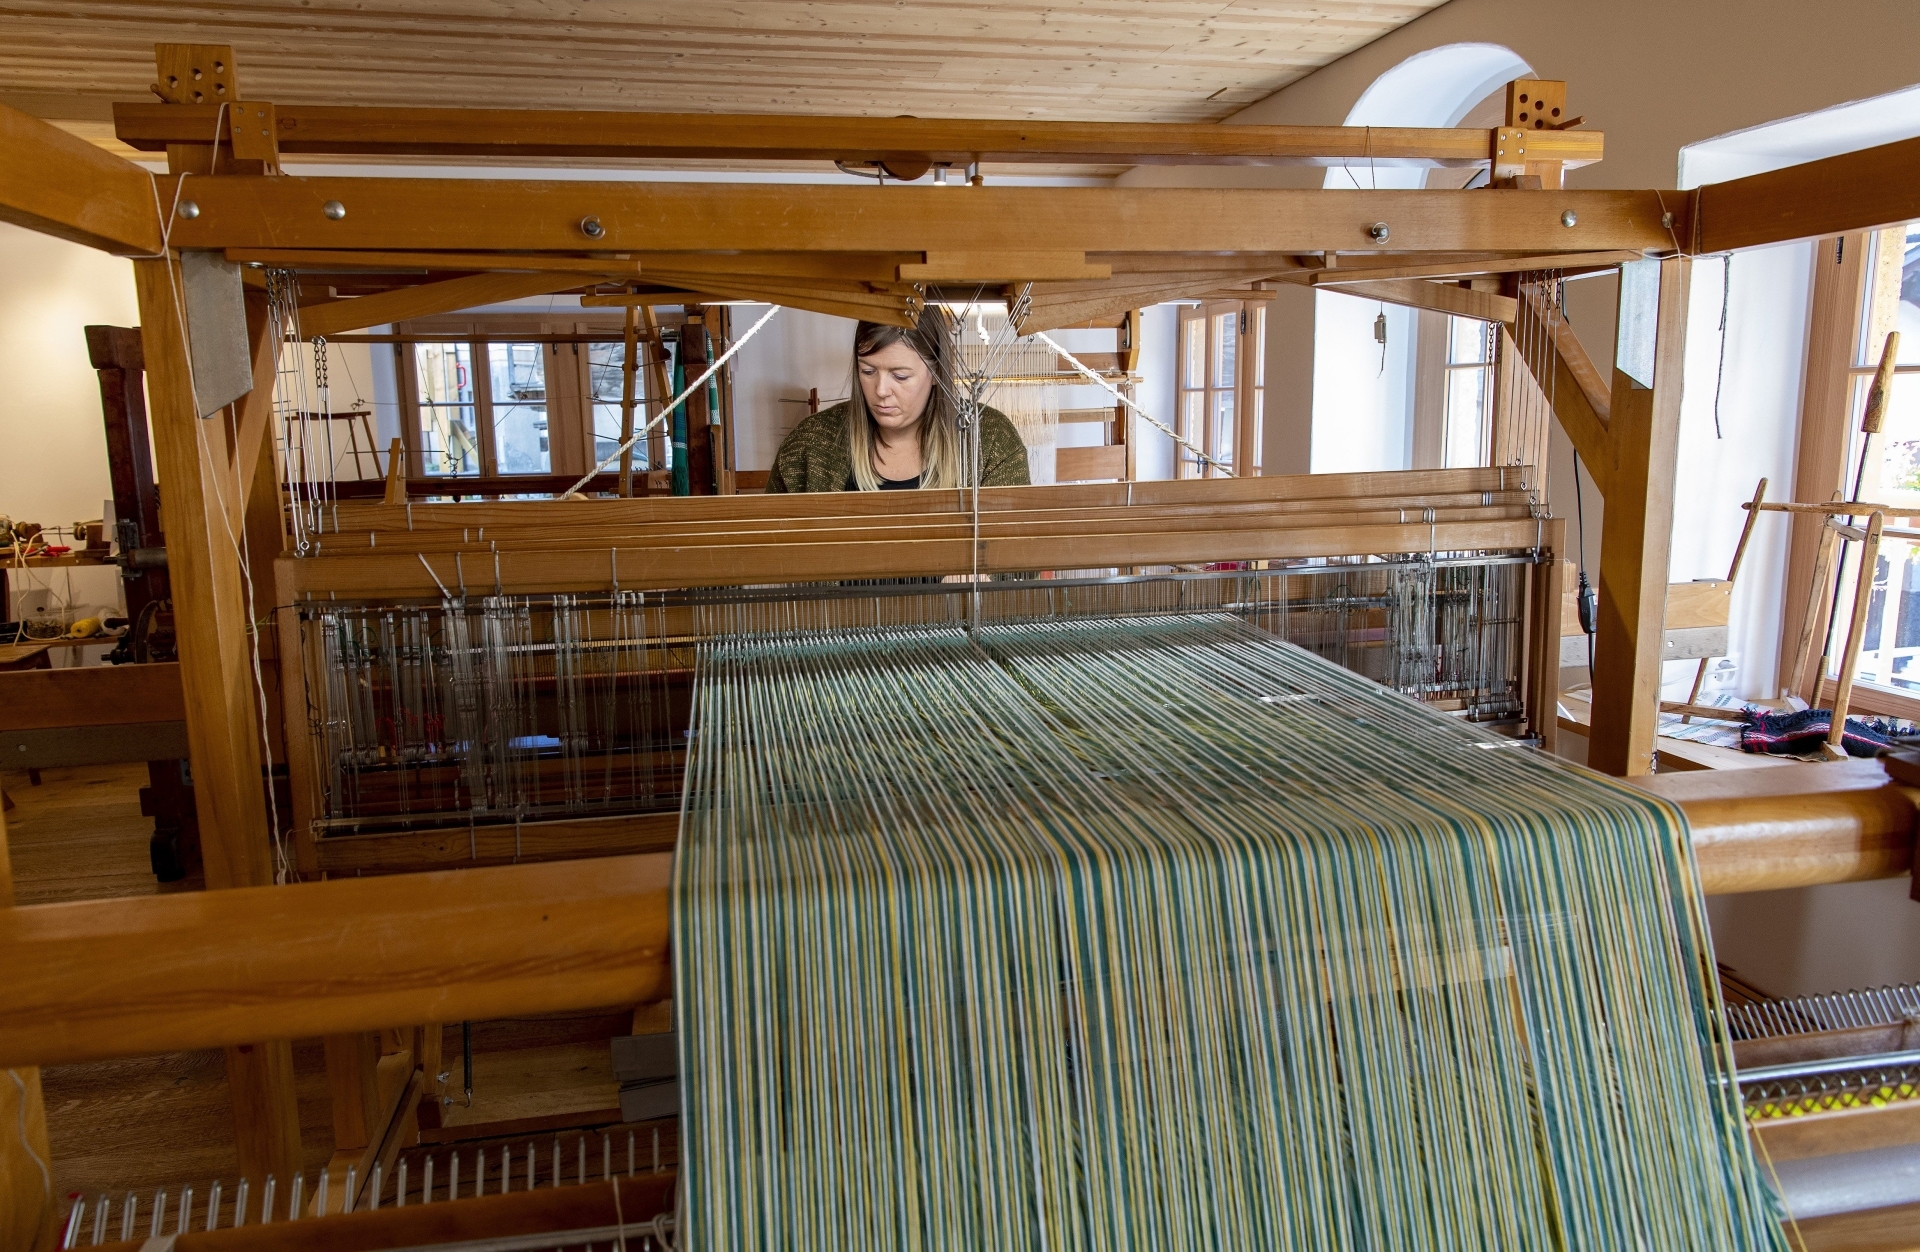 En réhabilitant cet atelier, le projet de la FAMM est de contribuer au maintien et à la mise en valeur des savoirs et traditions liés au travail du fil mais aussi d’encourager l’innovation dans la création textile.